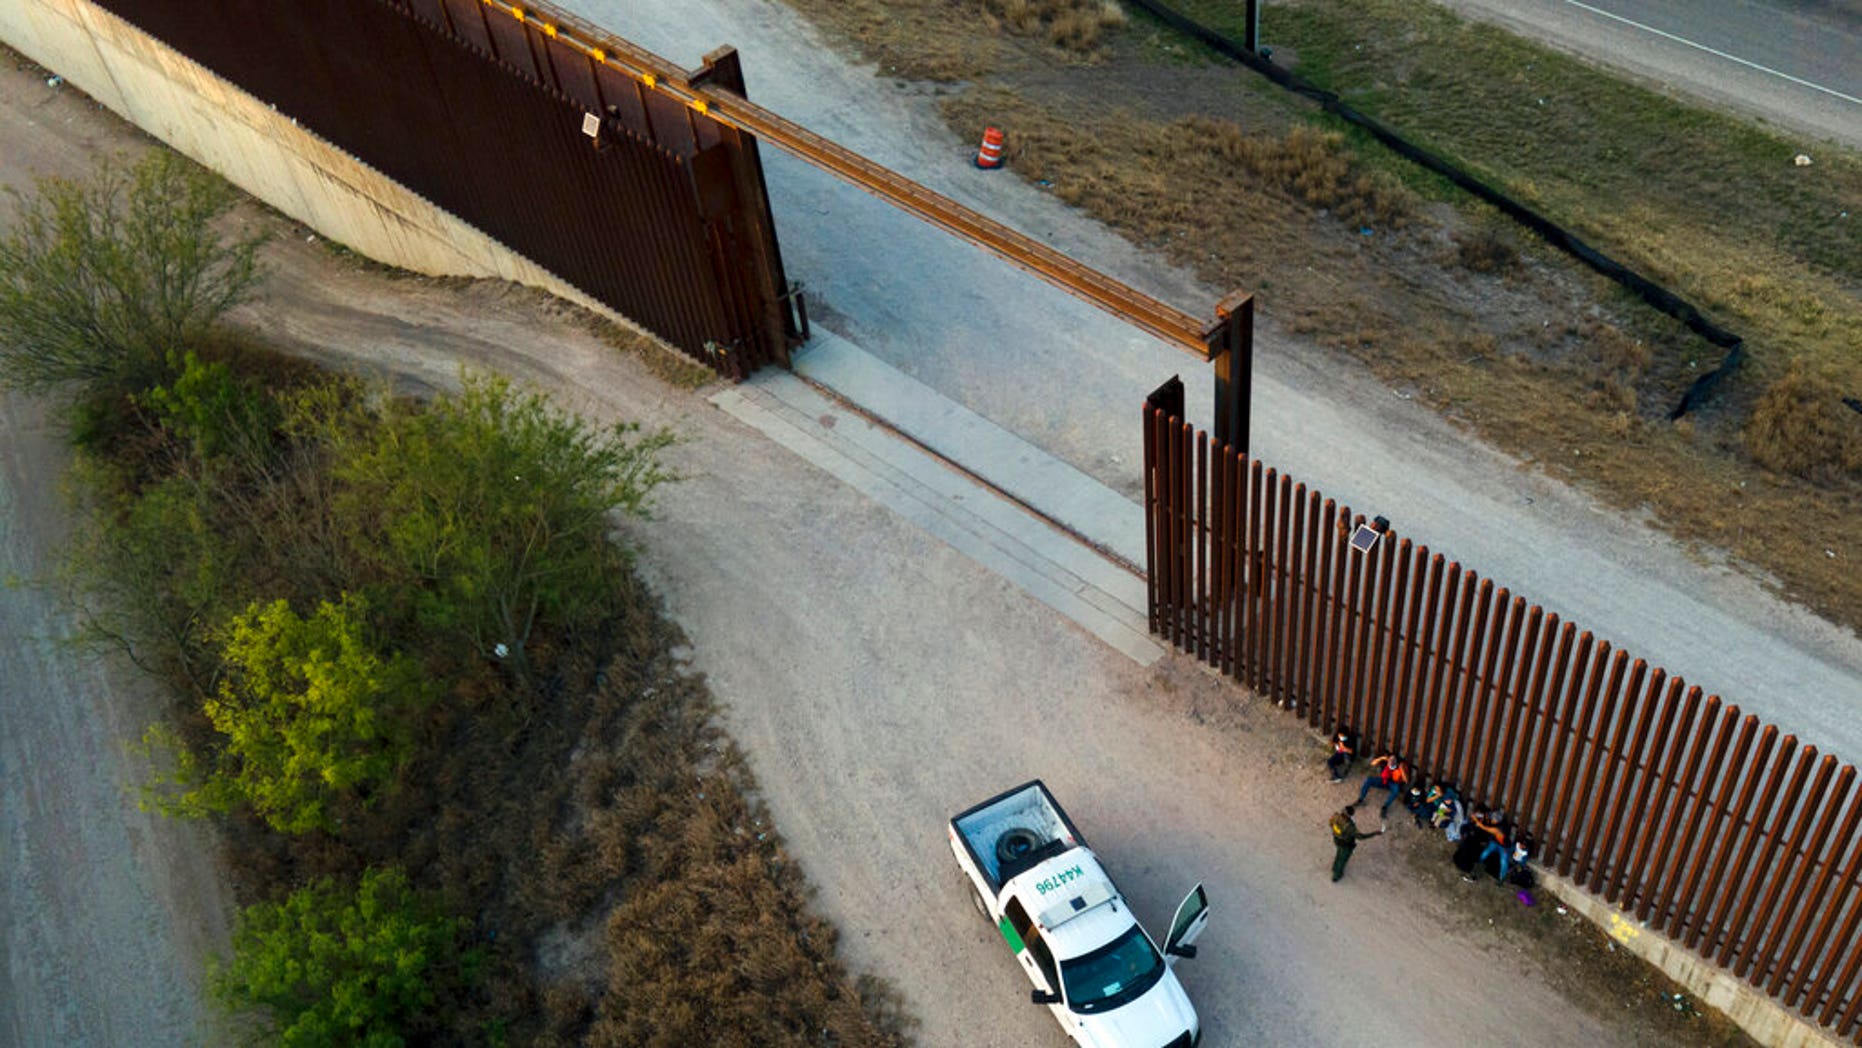 Tras las rejas un sujeto de Nuevo México por ocultar a más de 60 inmigrantes en una camioneta